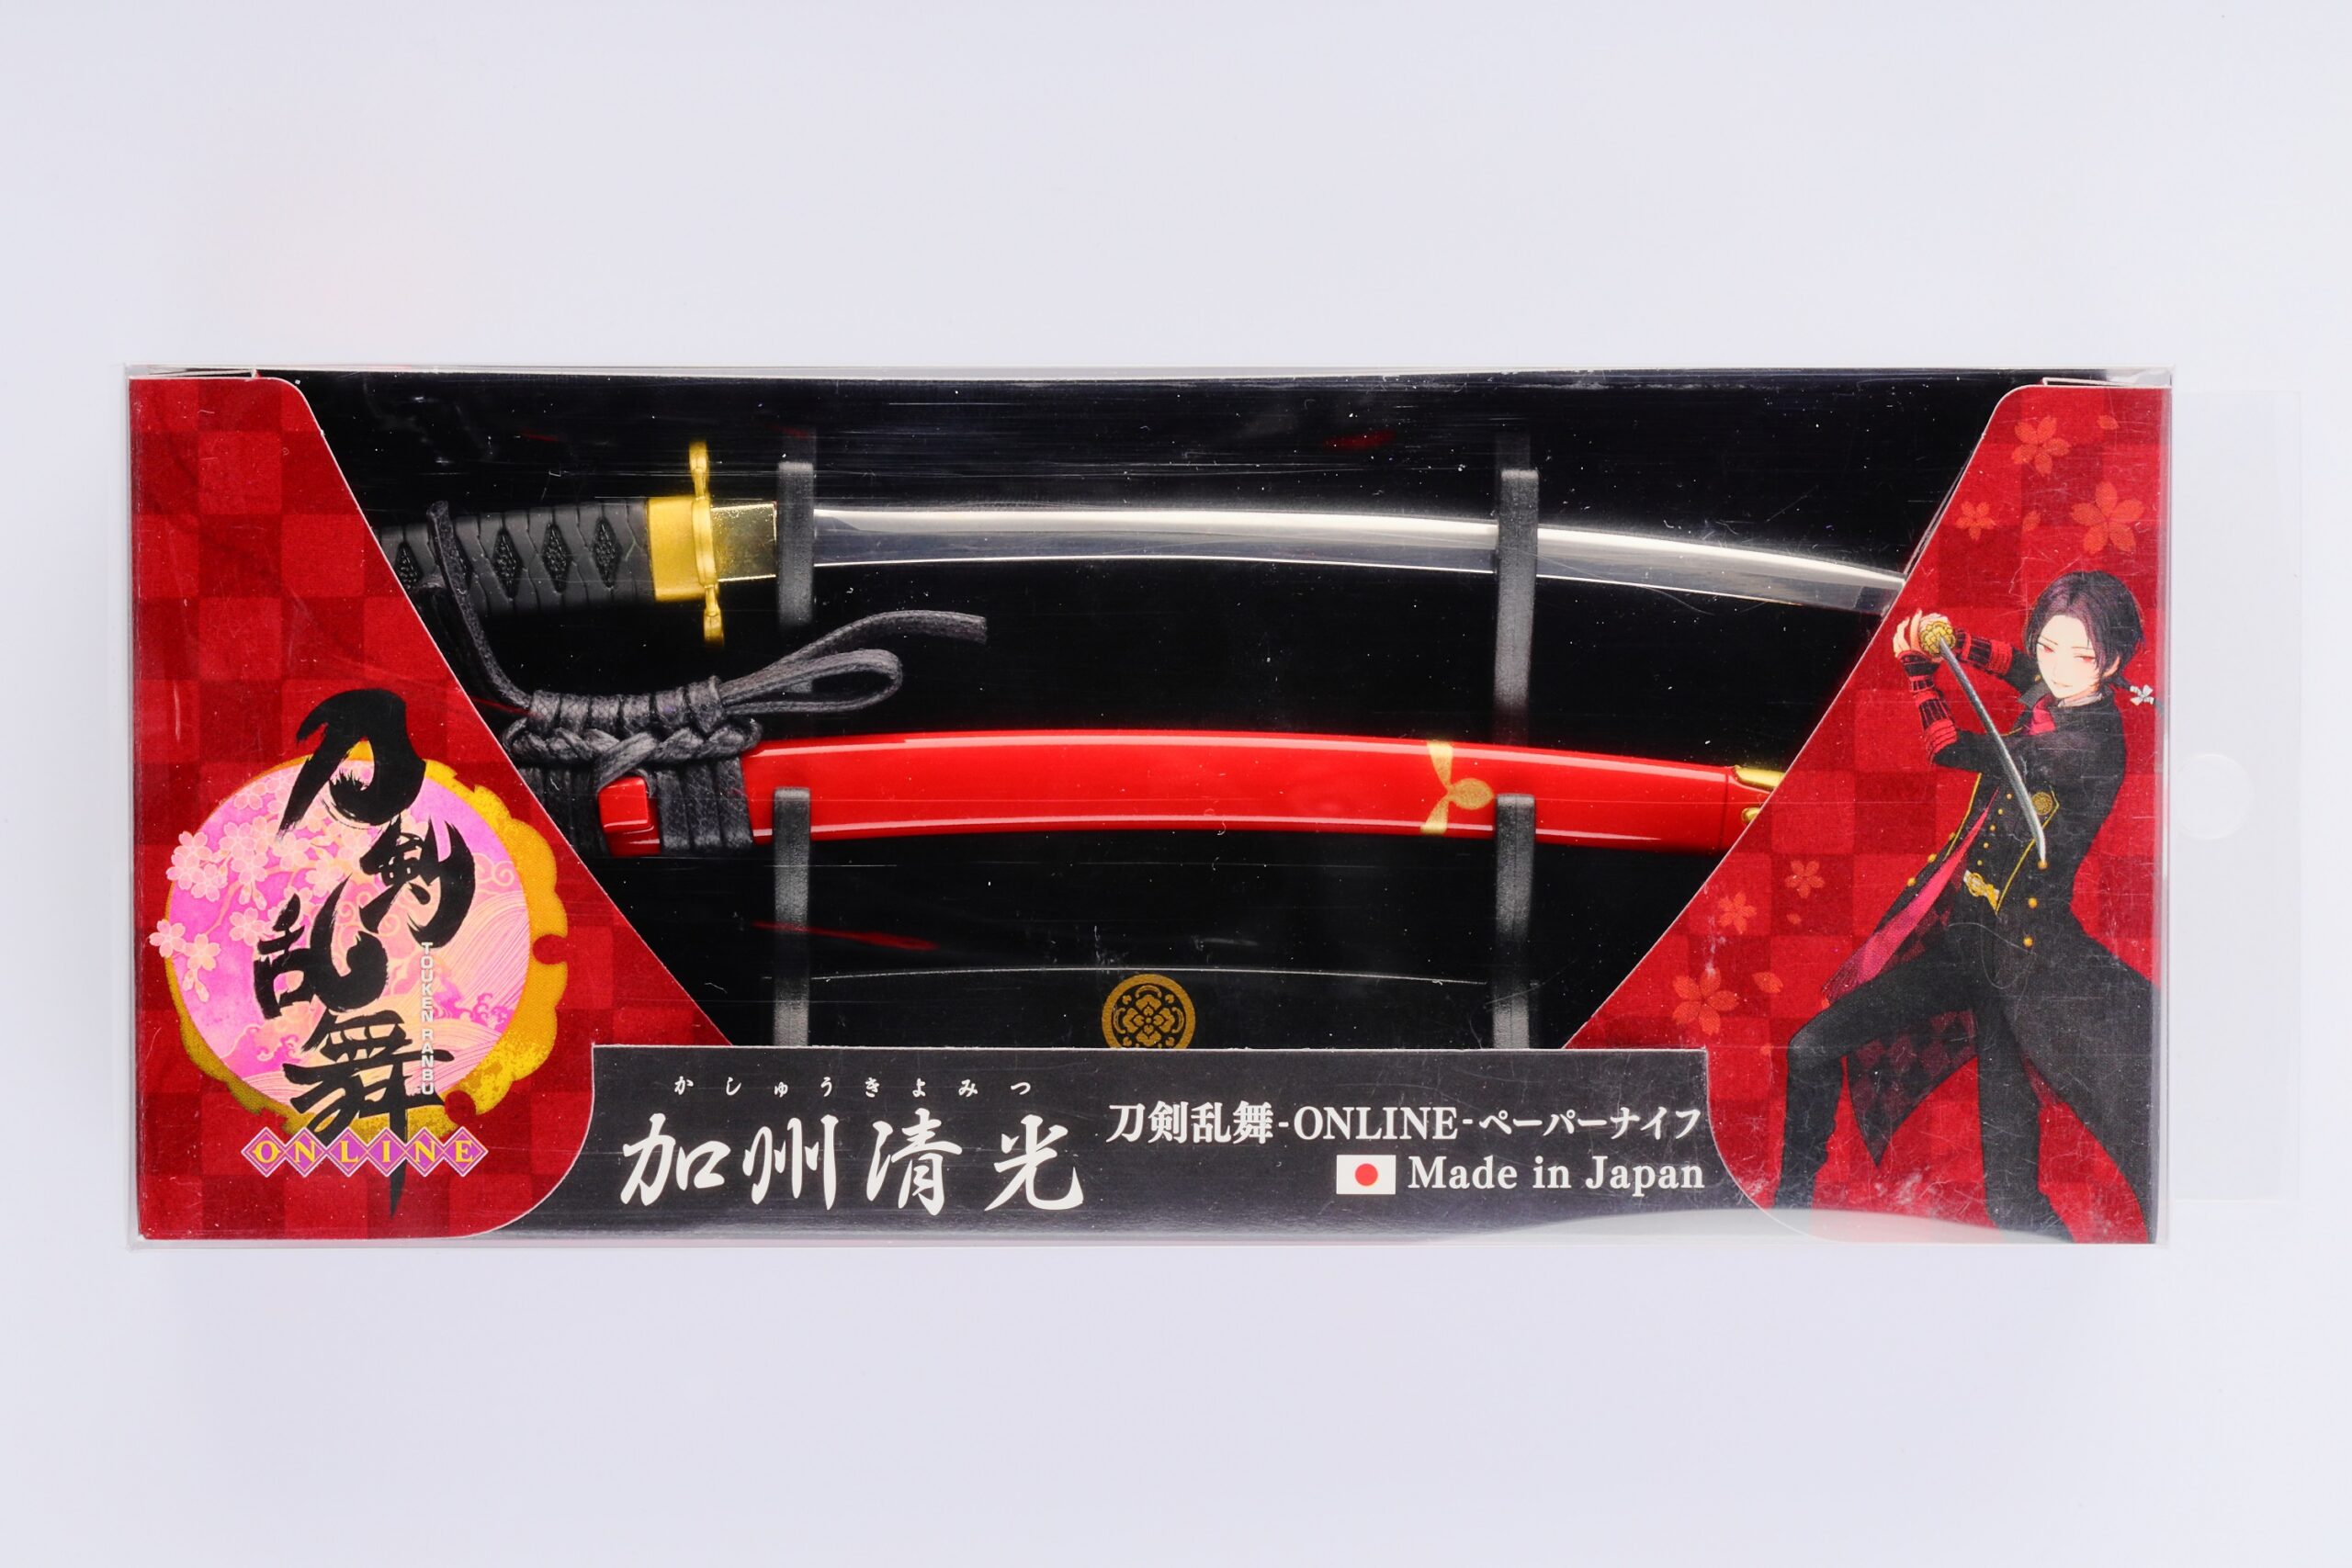 刀剣乱舞 Online ペーパーナイフ加州清光モデル 岐阜県関市の刃物メーカーニッケン刃物 はさみ 爪切りなど製造